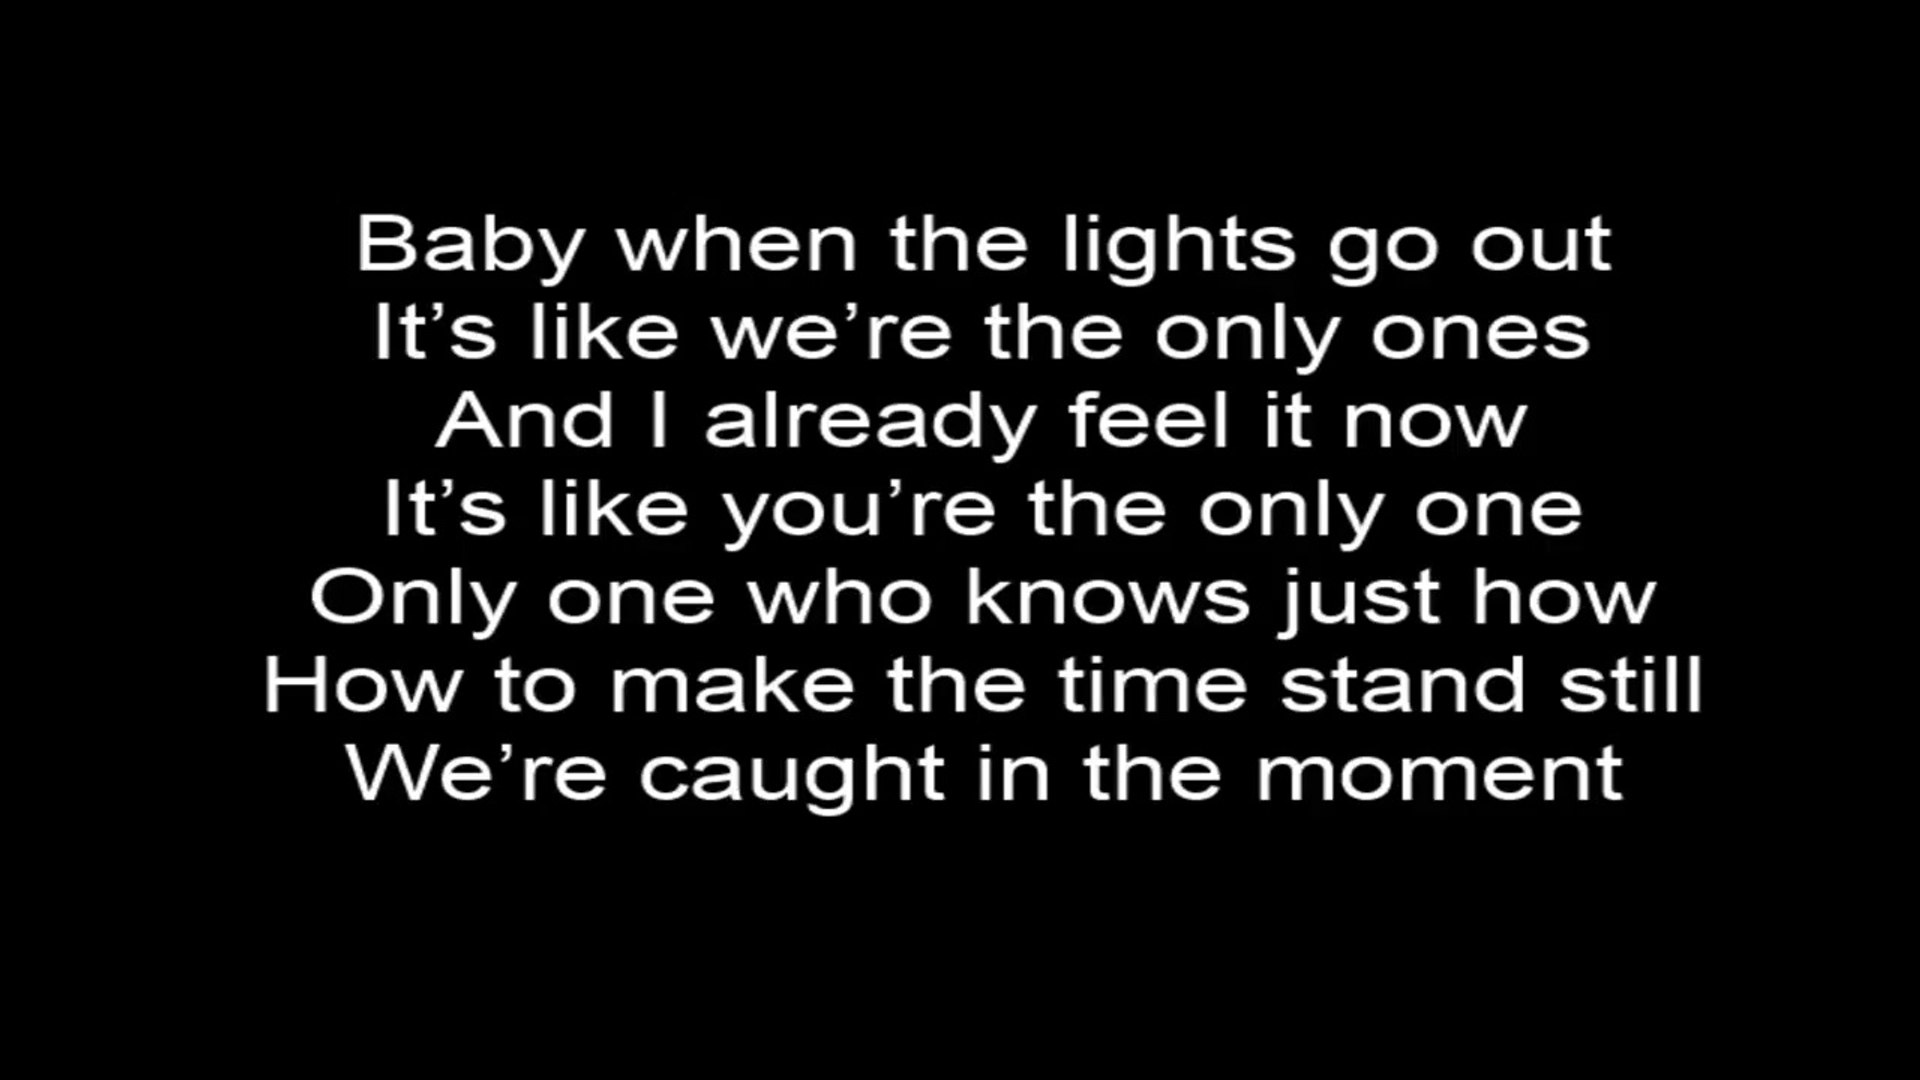 Wiz Khalifa - Promises lyrics 